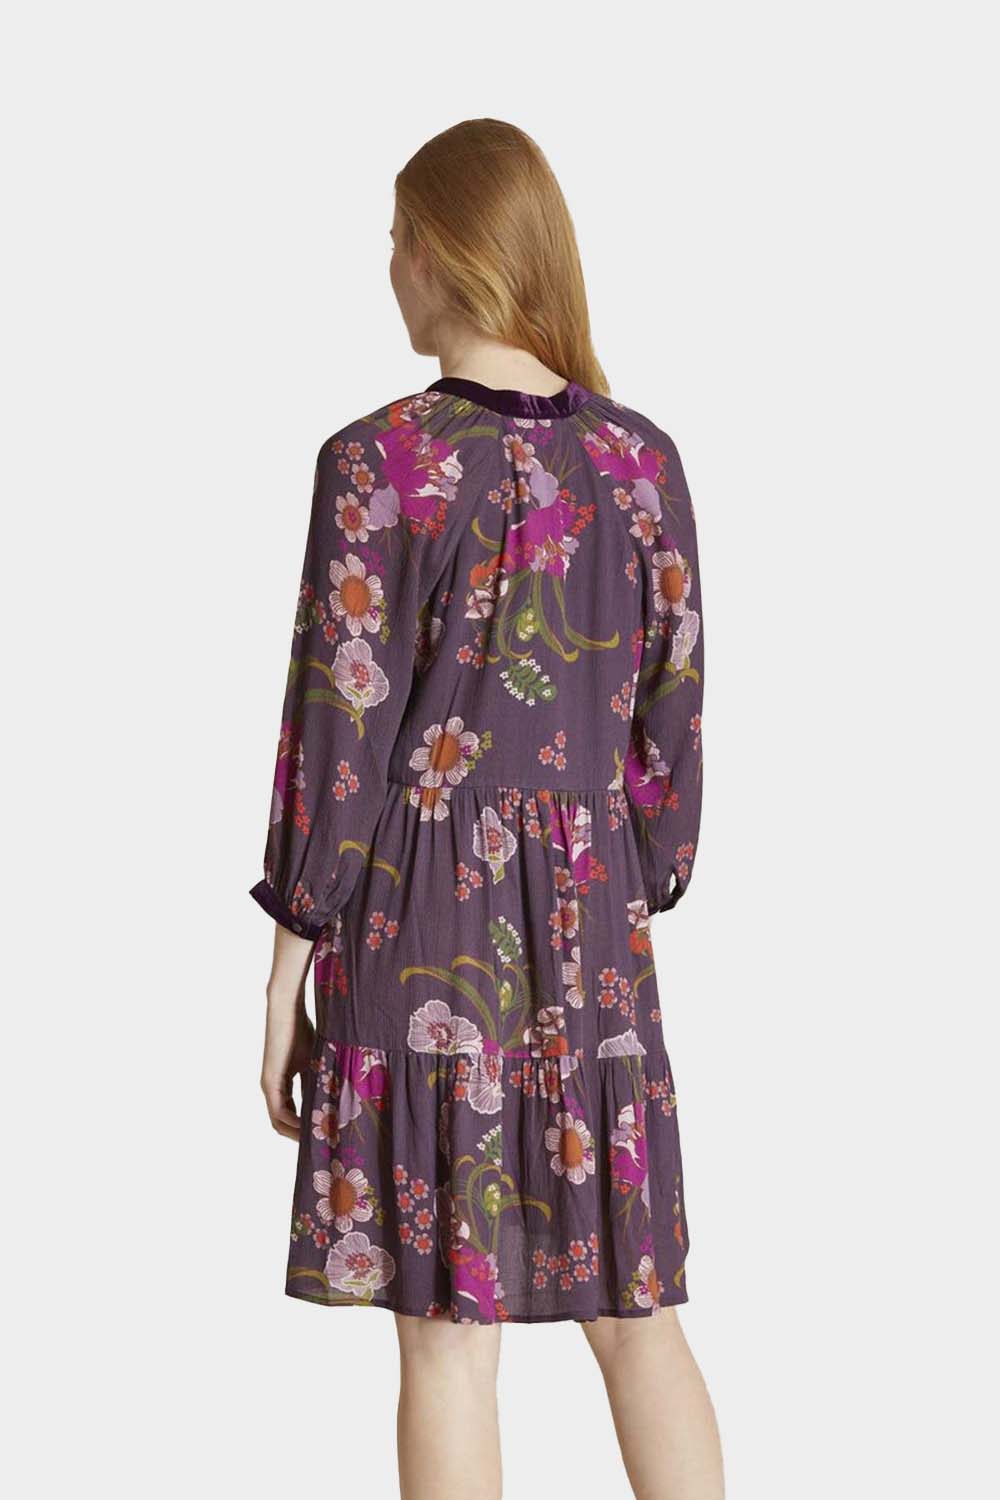 שמלת מיני לנשים איי ליין פרחים בוהמייני RENE DERHY Vendome online | ונדום .